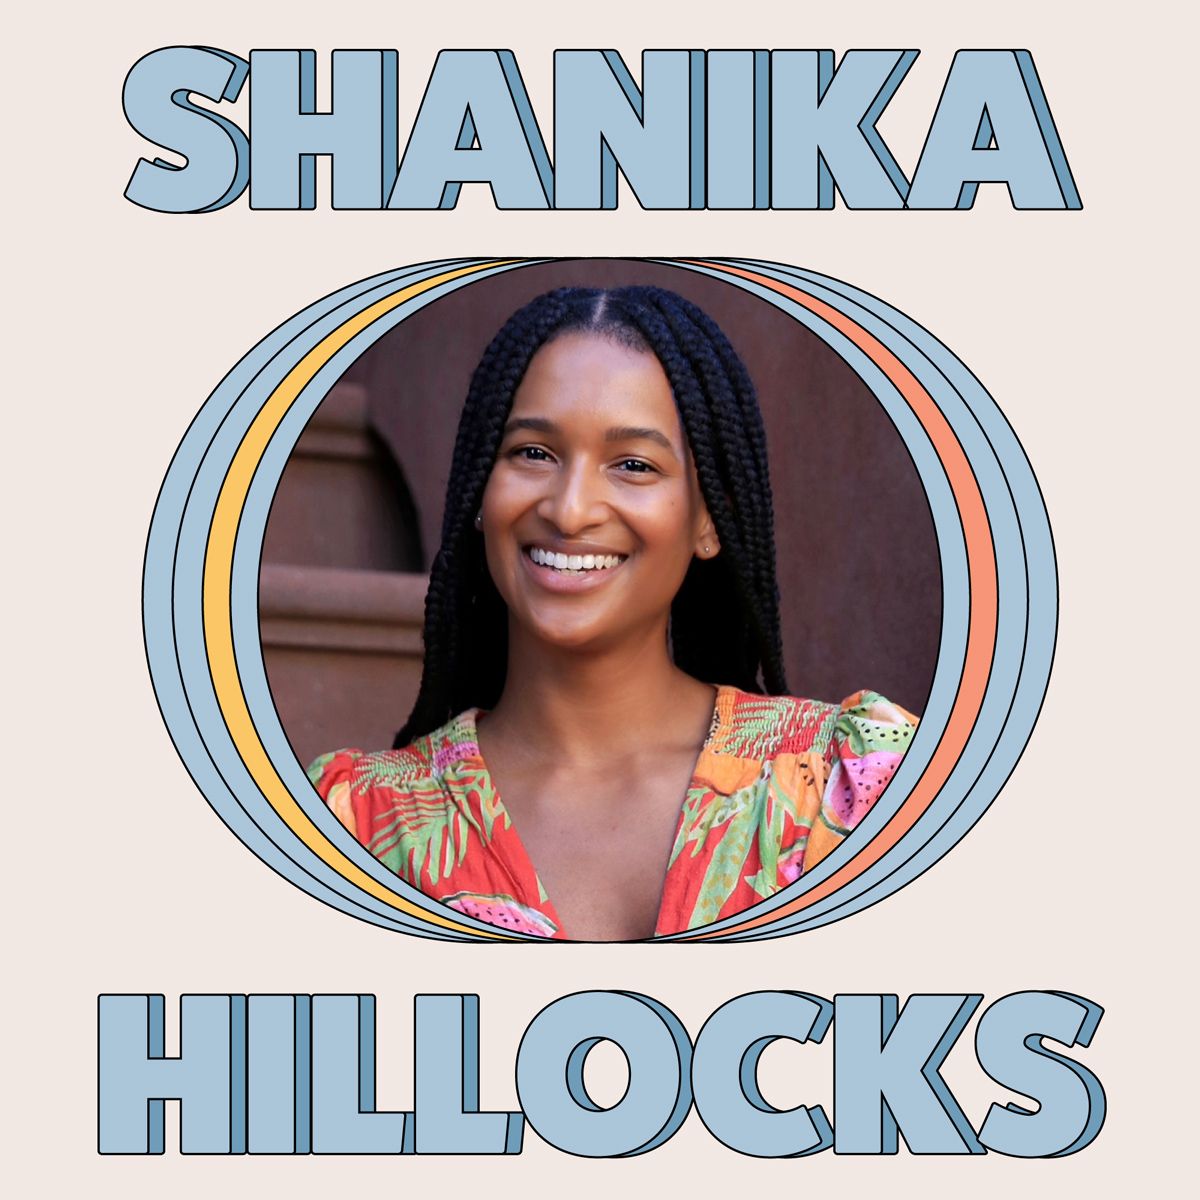 Shanika Hillocks